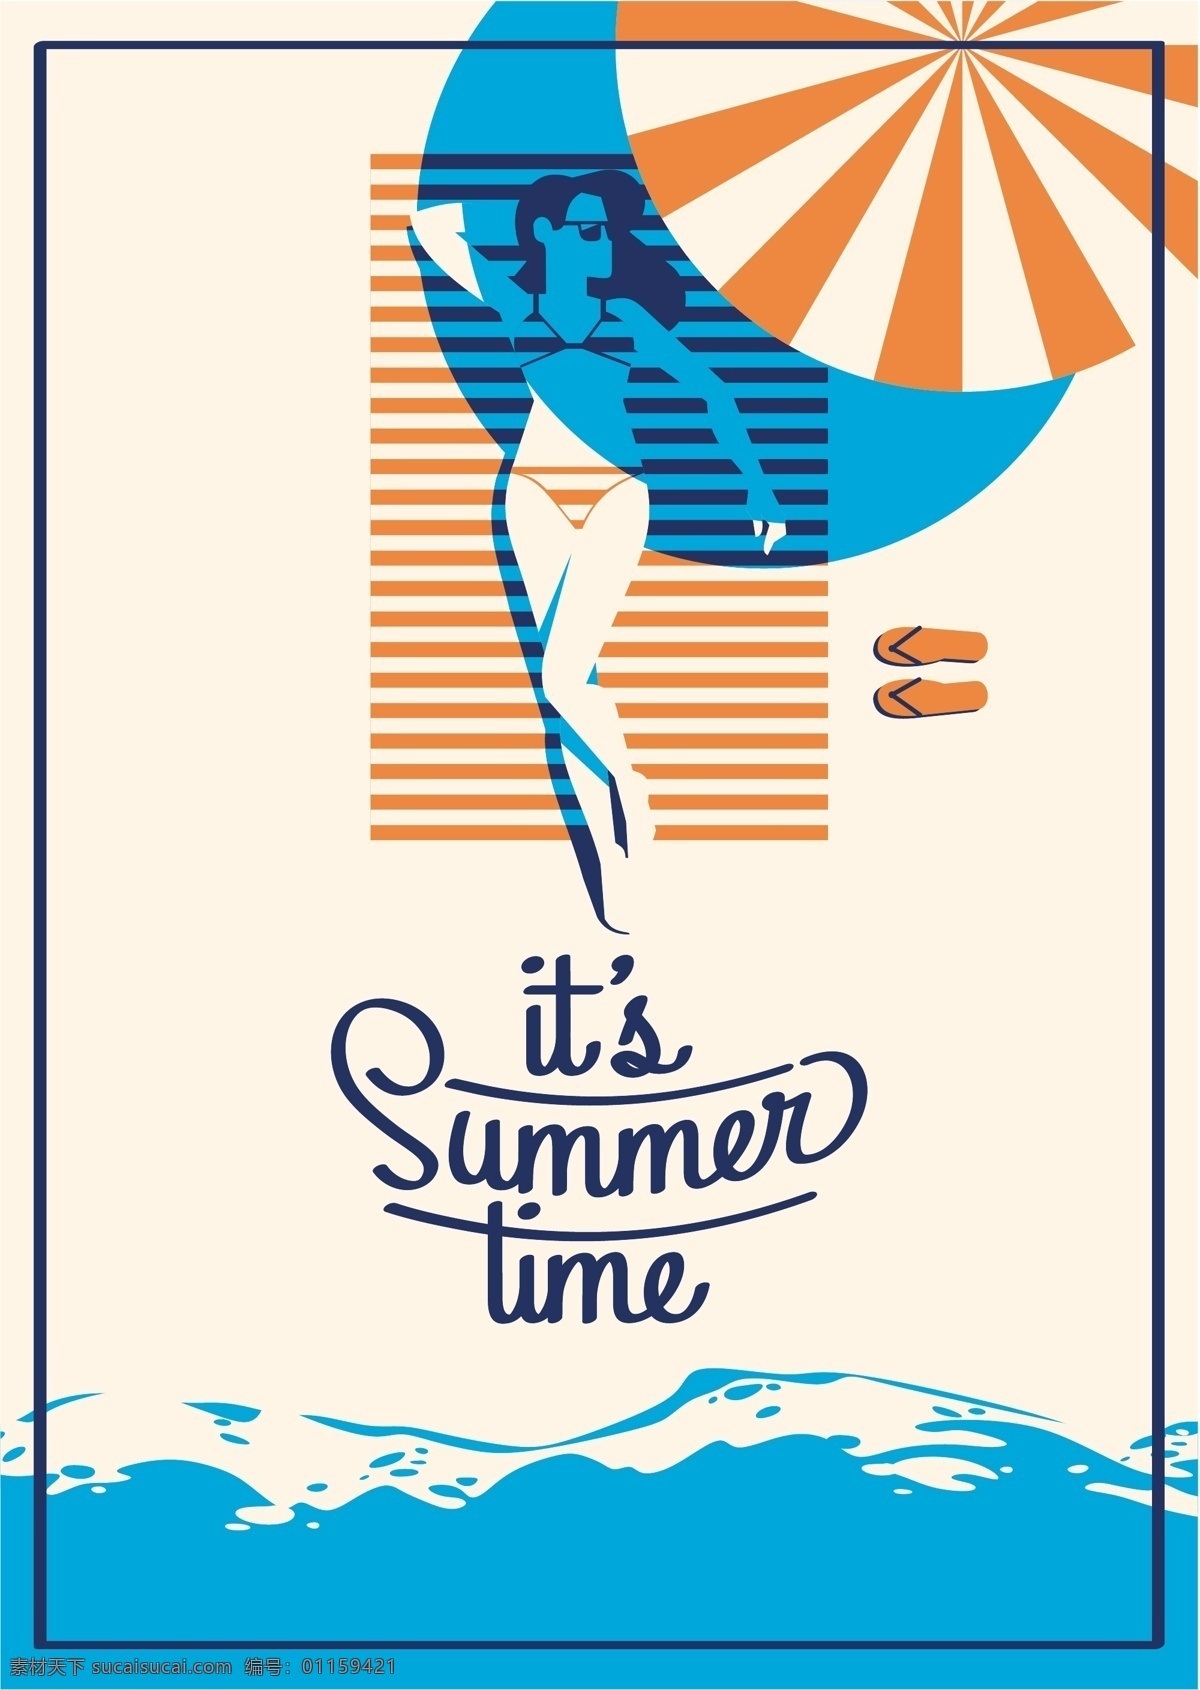 美女 沙滩 夏日 假期 度假 矢量 海报 背景 条纹 蓝色 海水 创意 小清新 卡通 填充 插画 广告 包装 印刷 夏天